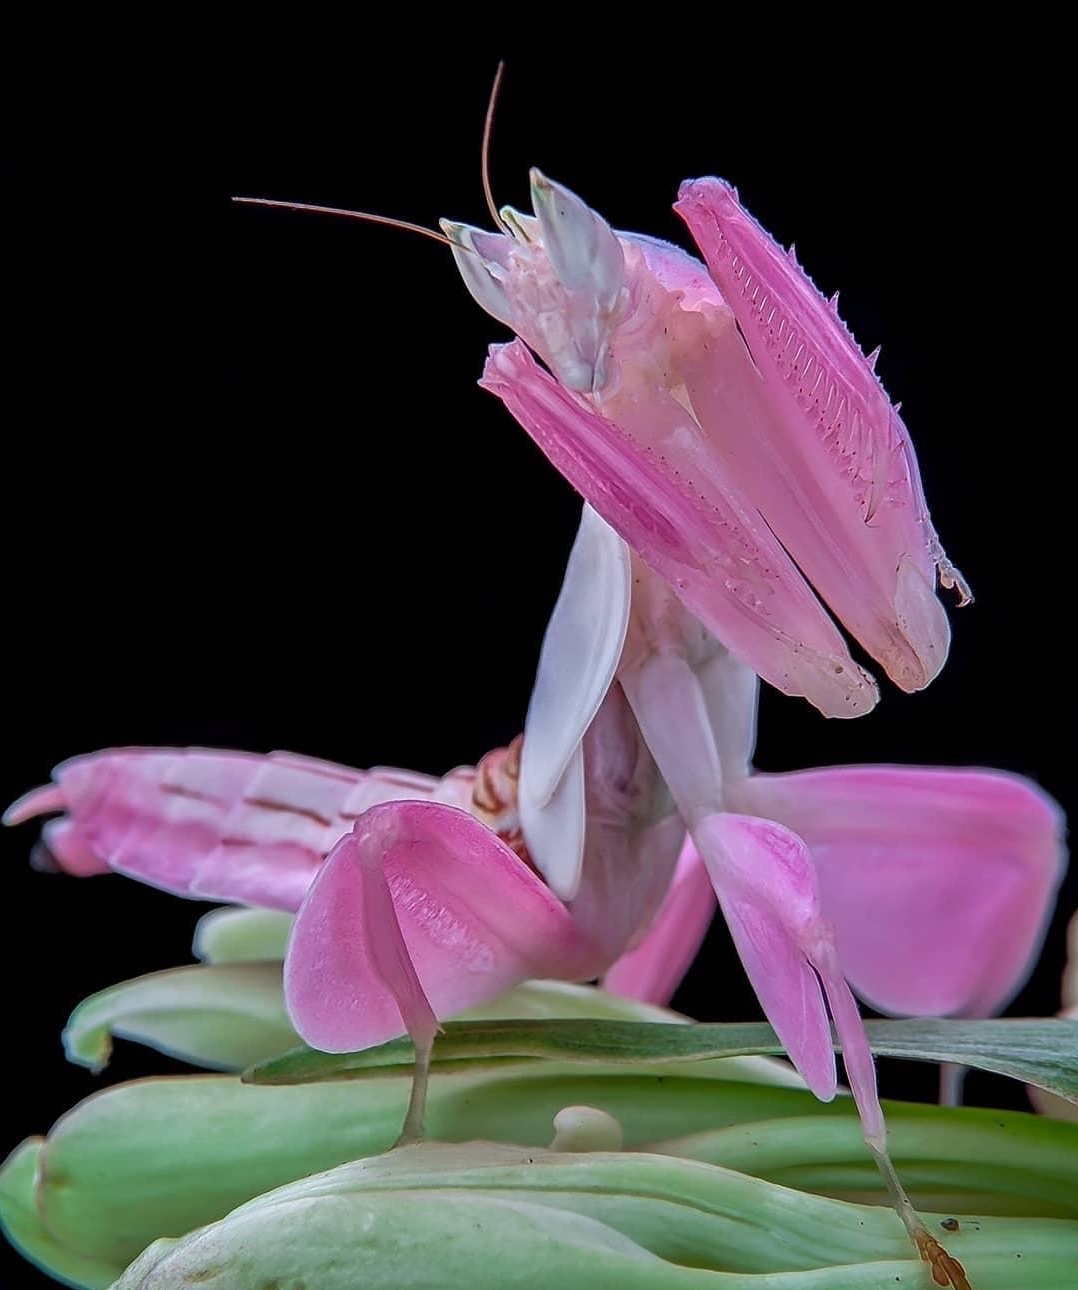 它们喜欢在鲜艳的花朵里藏身,捕猎,兰花螳螂则是其中的佼佼者.